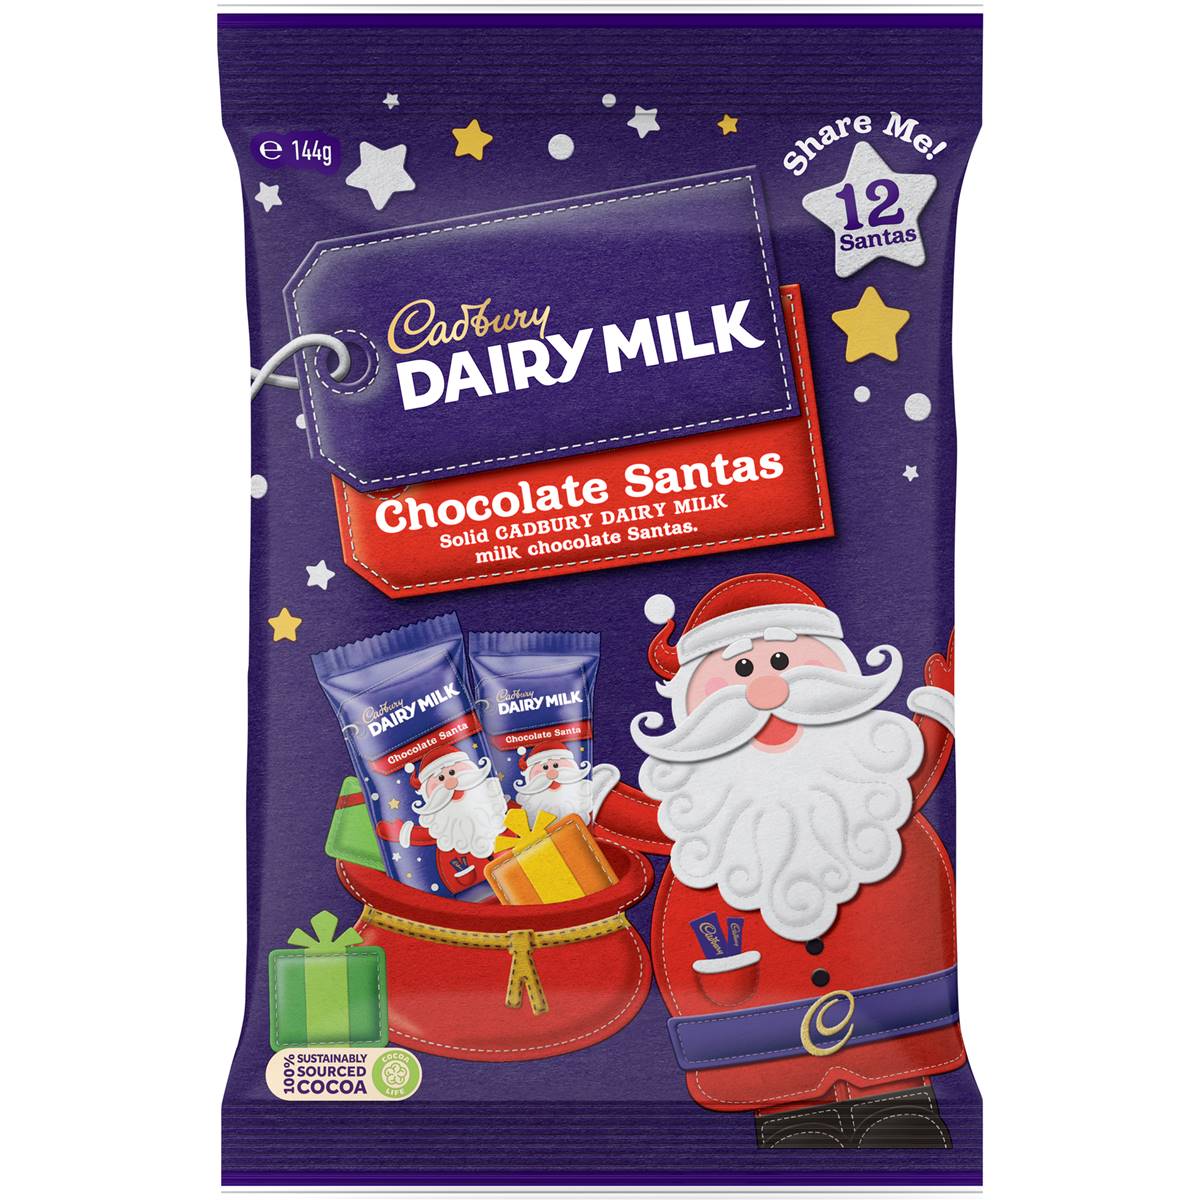 Cadbury Dairy Milk Chocolate Santas 144g